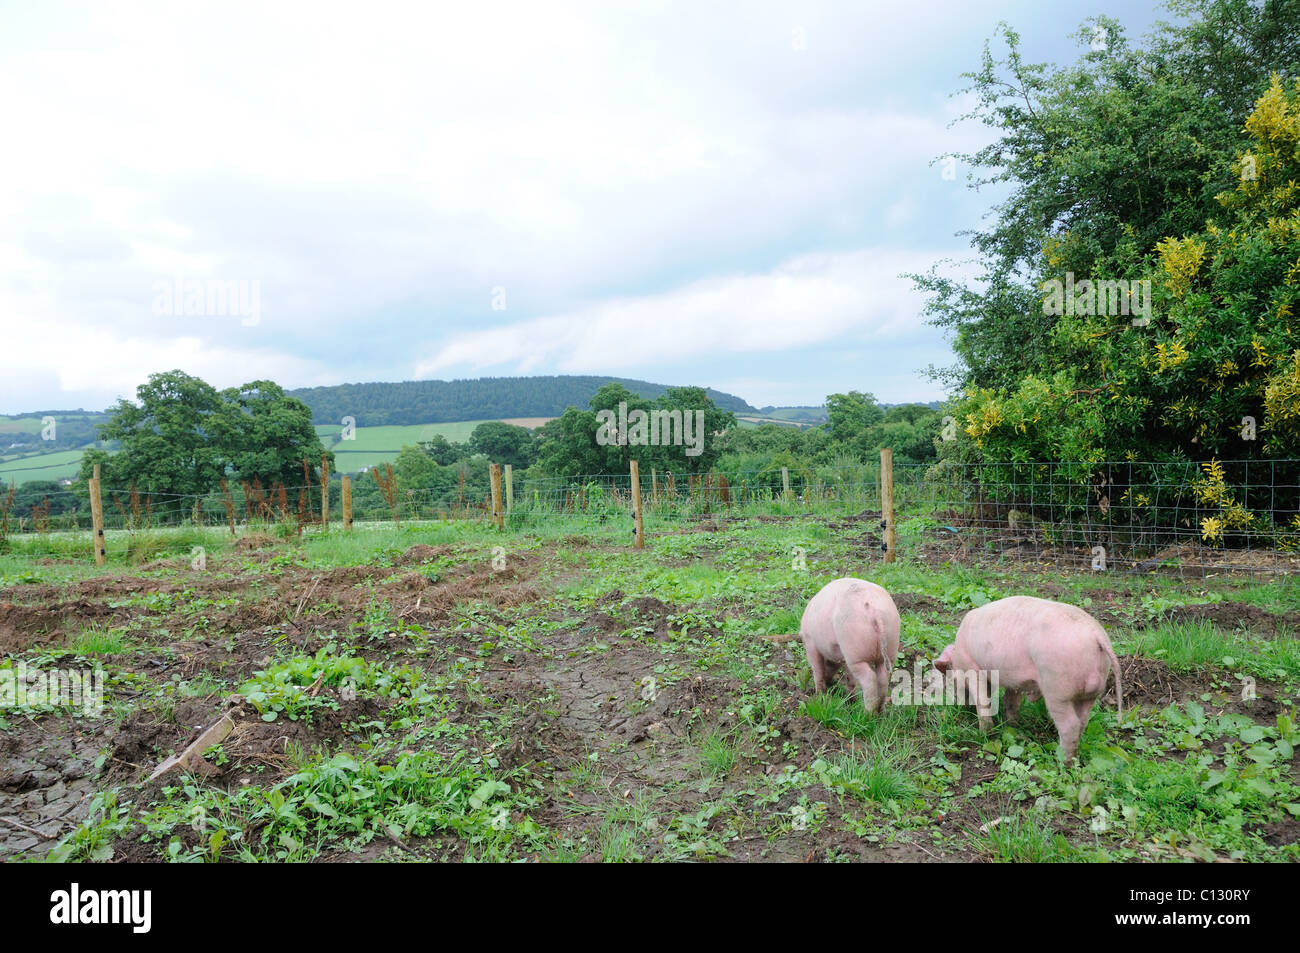 Zwei Schweine in einem eingezäunten Bereich eines Gartens Stockfoto